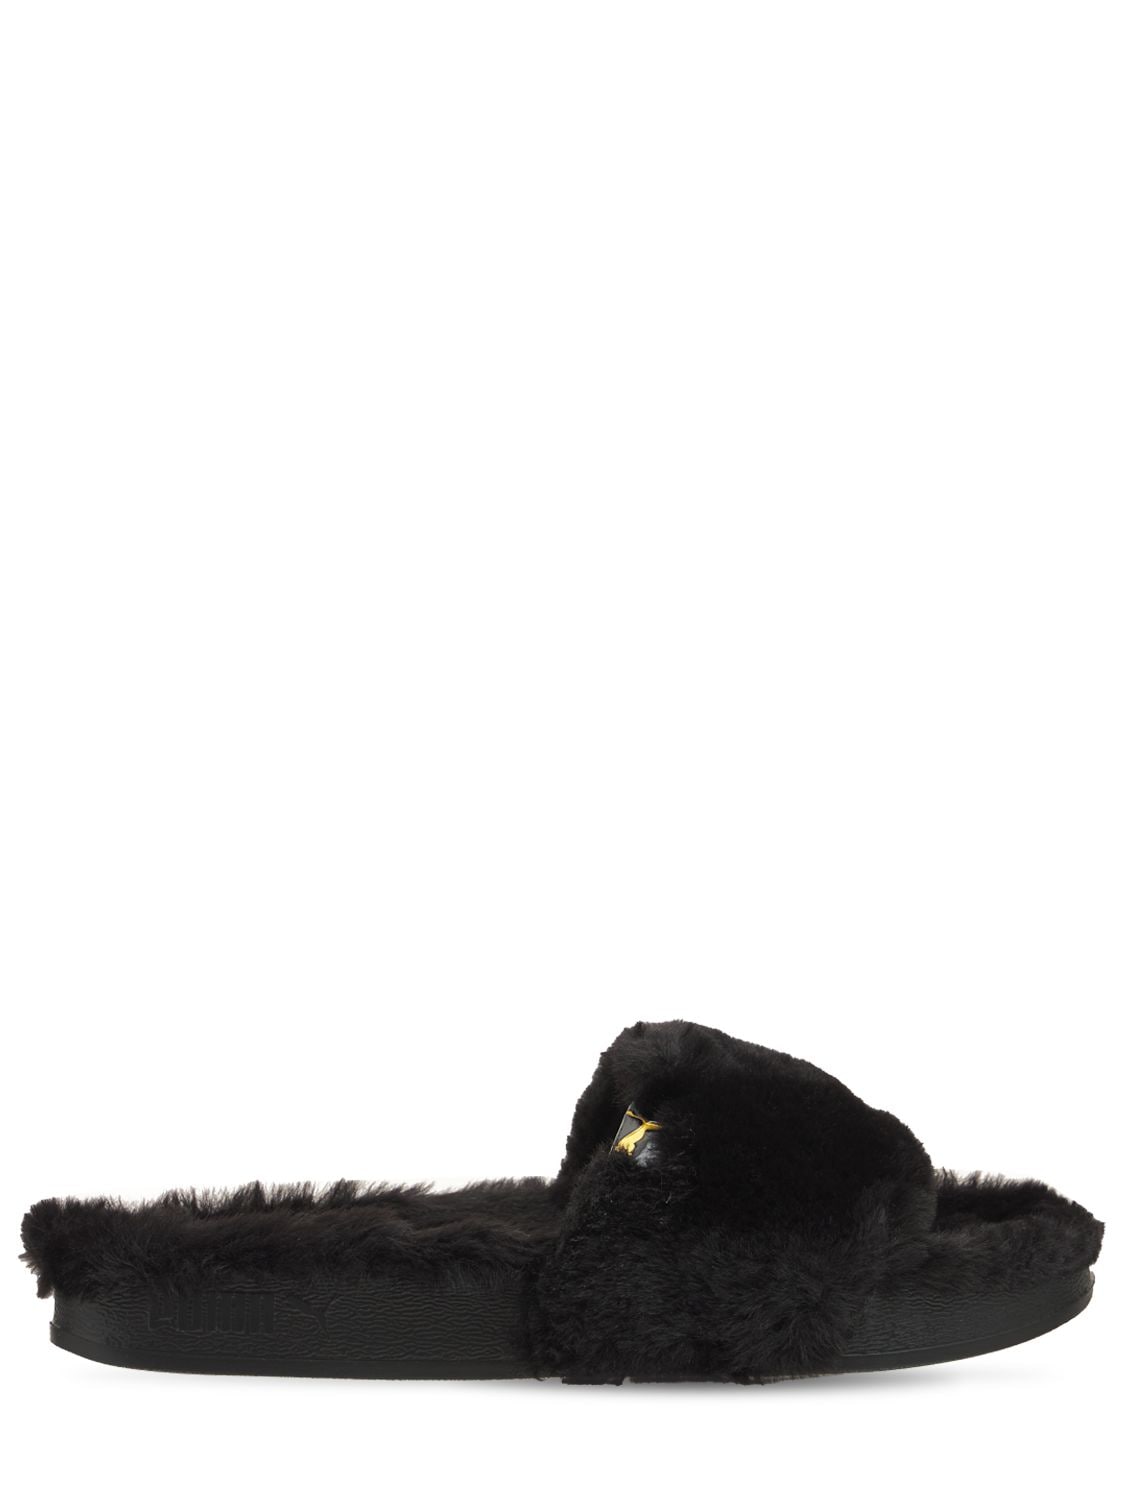 puma sandals fur black